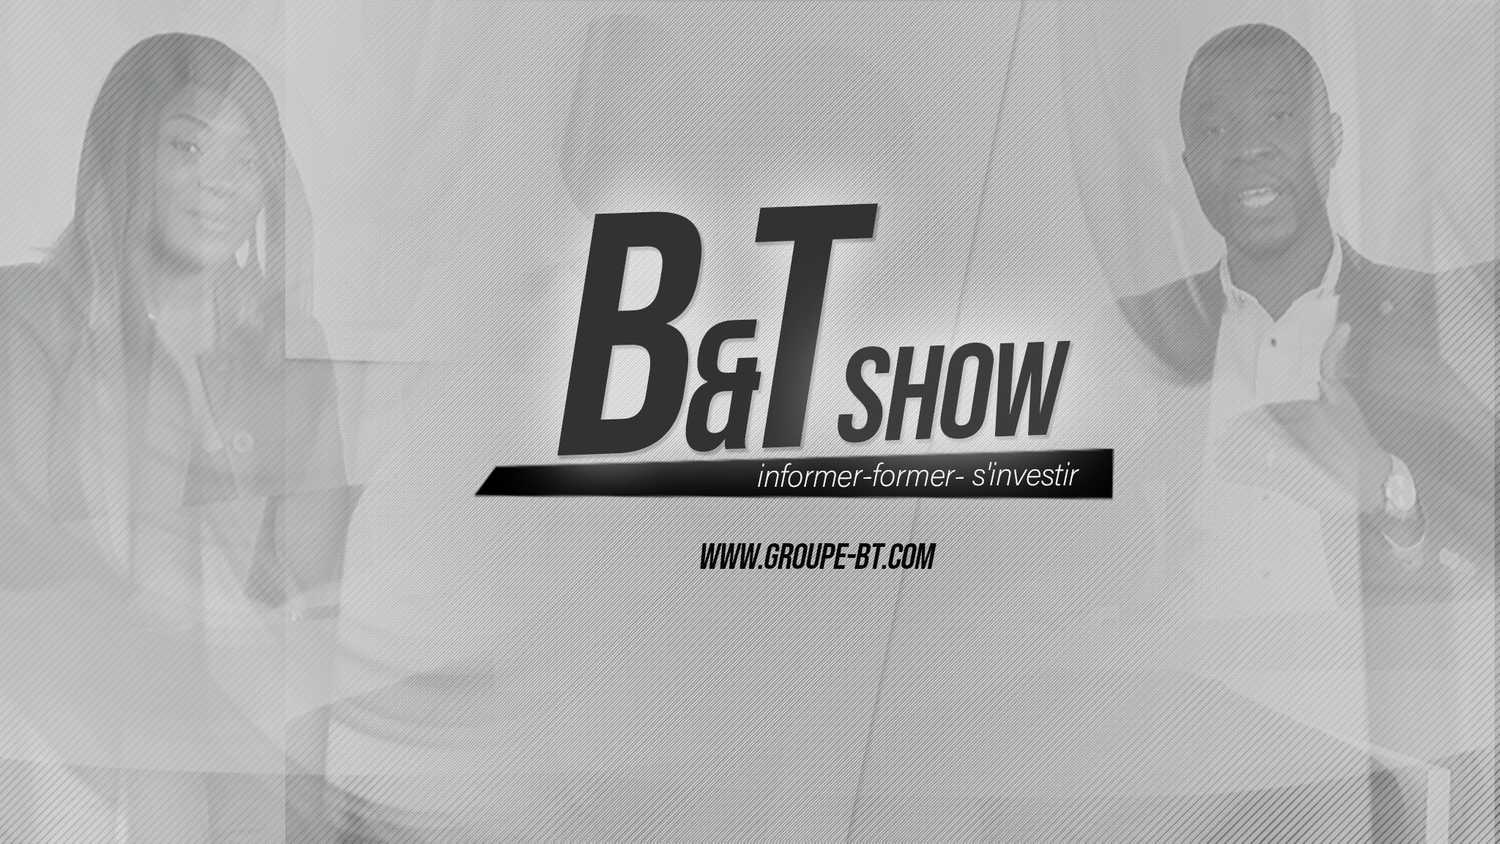 B&T Show est un programme d’information et d'échange sur l'actualités socioéconomique